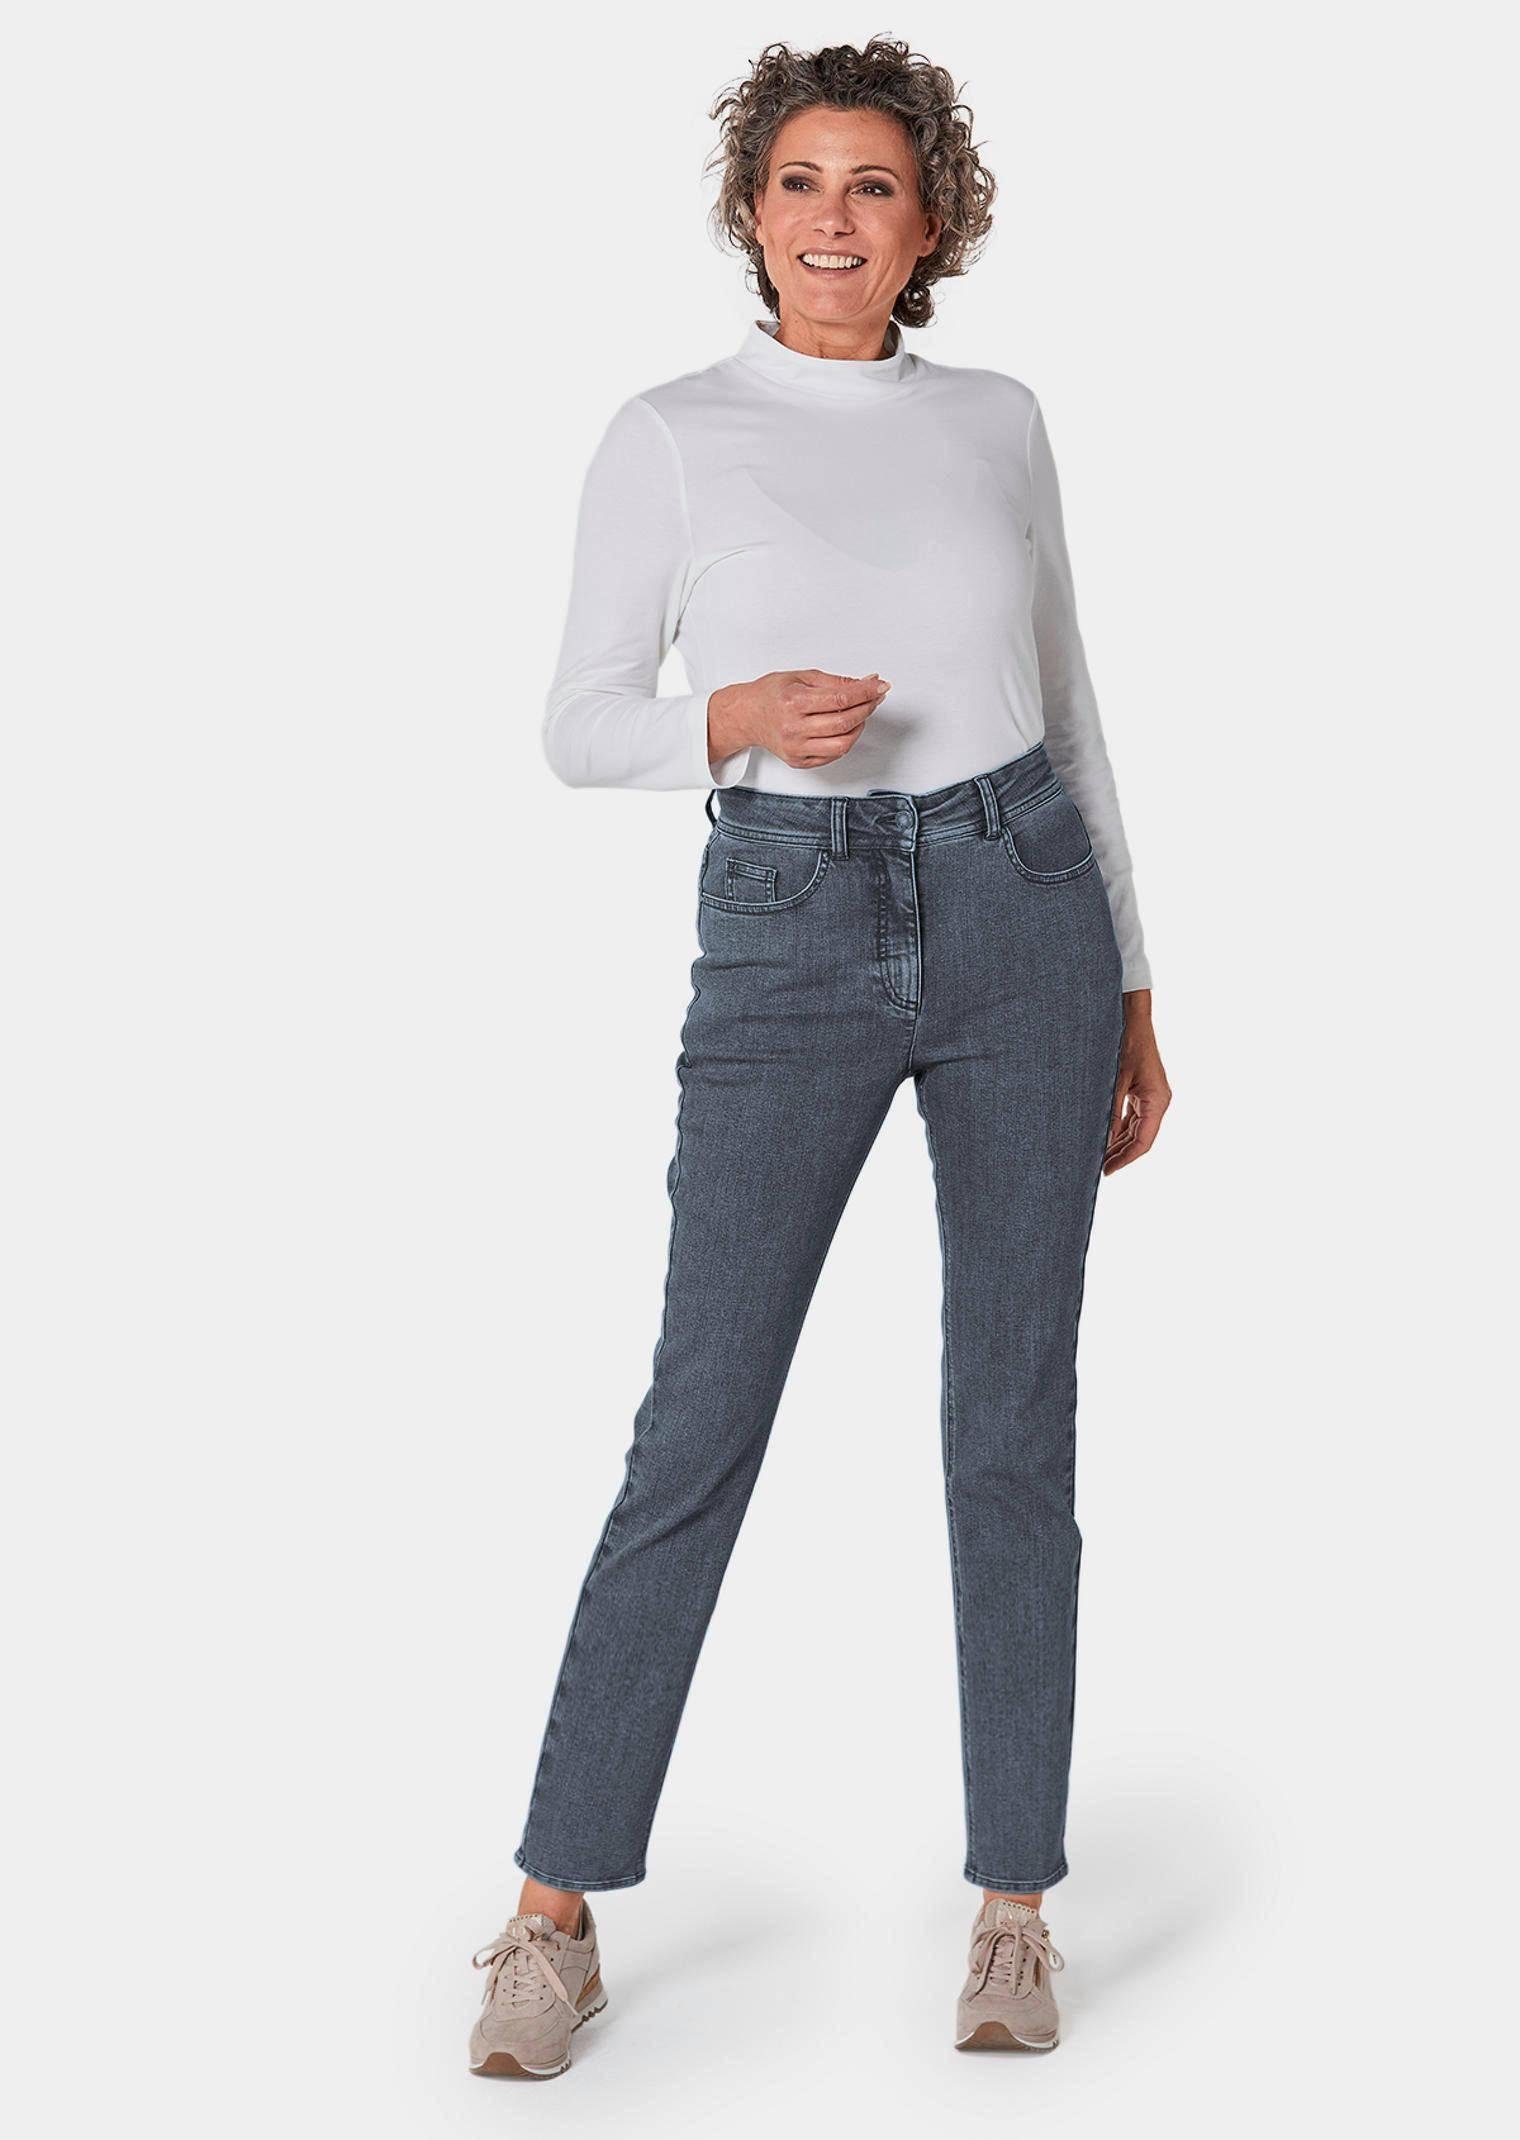 Hose Kurzgröße: grau Superbequeme Bauchweg-Effekt GOLDNER Jeans mit Bequeme